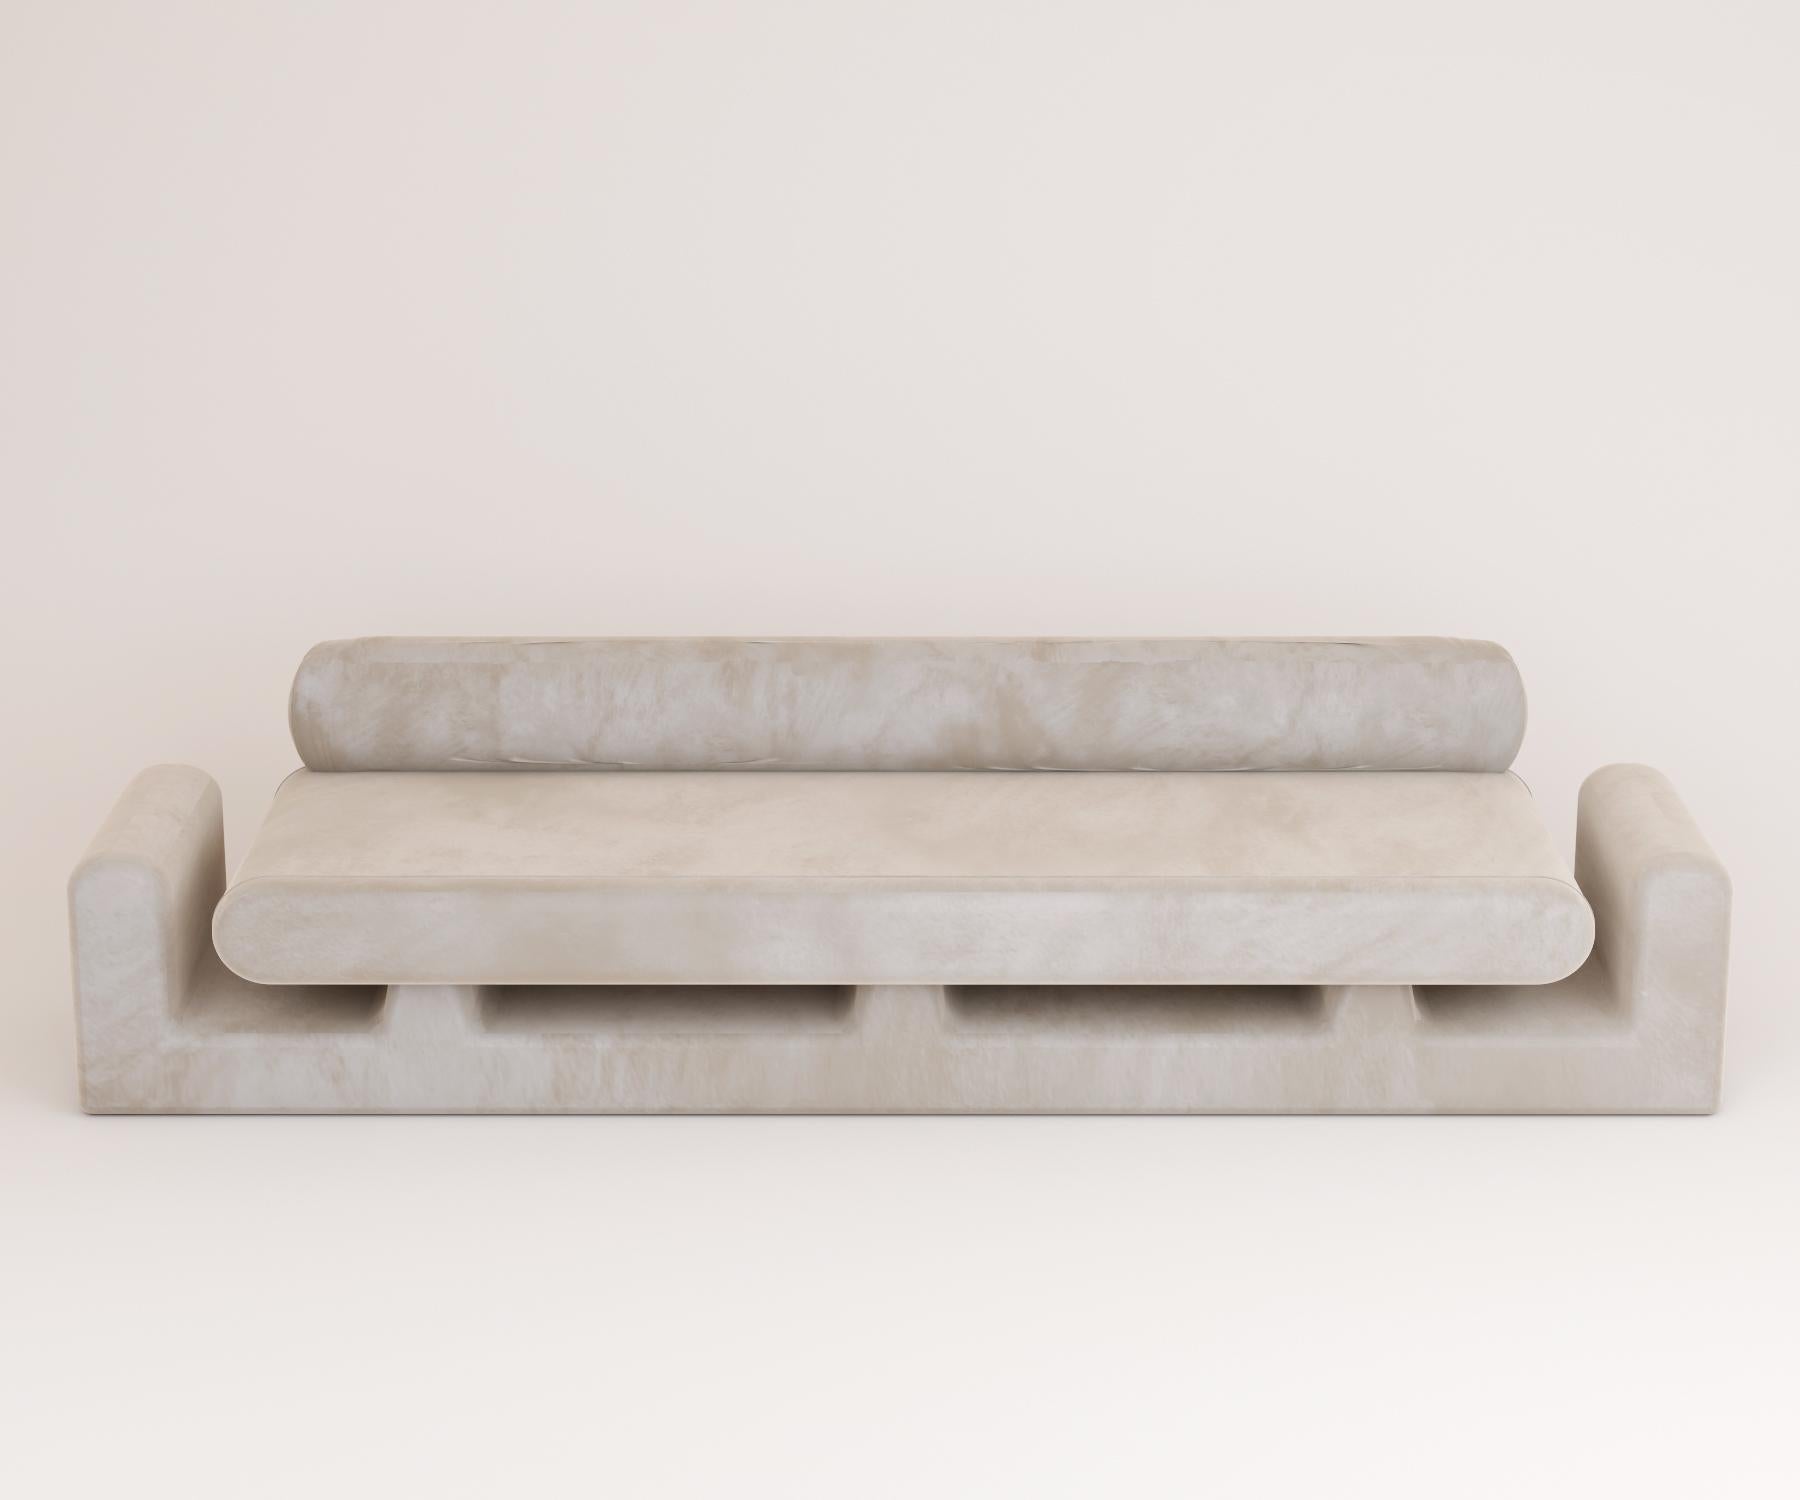 Graues sofa Hug von Rejo Studio
Abmessungen: T 315 x B 95 x H 76 cm
MATERIALIEN: Holzstruktur, mit Samt
Auch in verschiedenen Farben erhältlich.

Lange bequeme Umarmung. Das Umarmungssofa verfügt über zwei einladende, pummelige Arme und einen